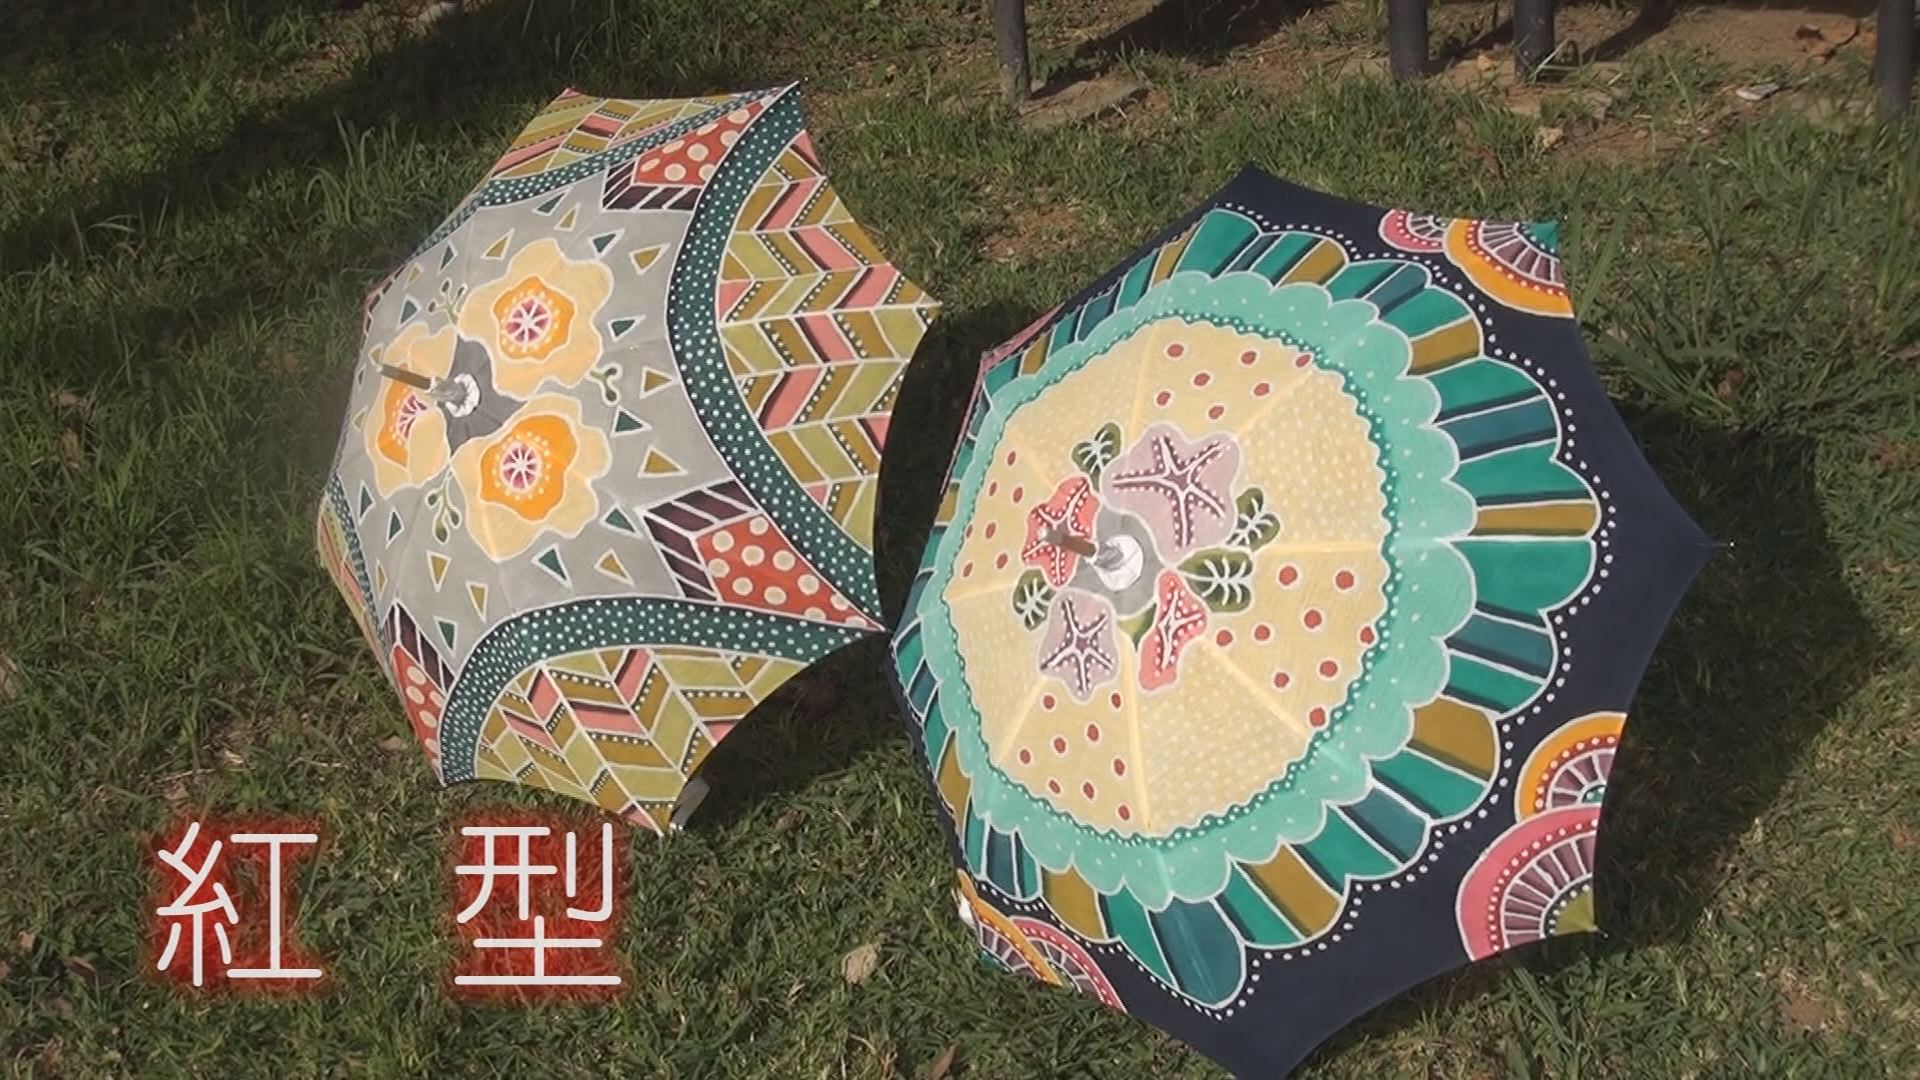 5月23日の沖縄BON!!:特集｢沖縄の伝統工芸品をカジュアルに」 | 琉球放送